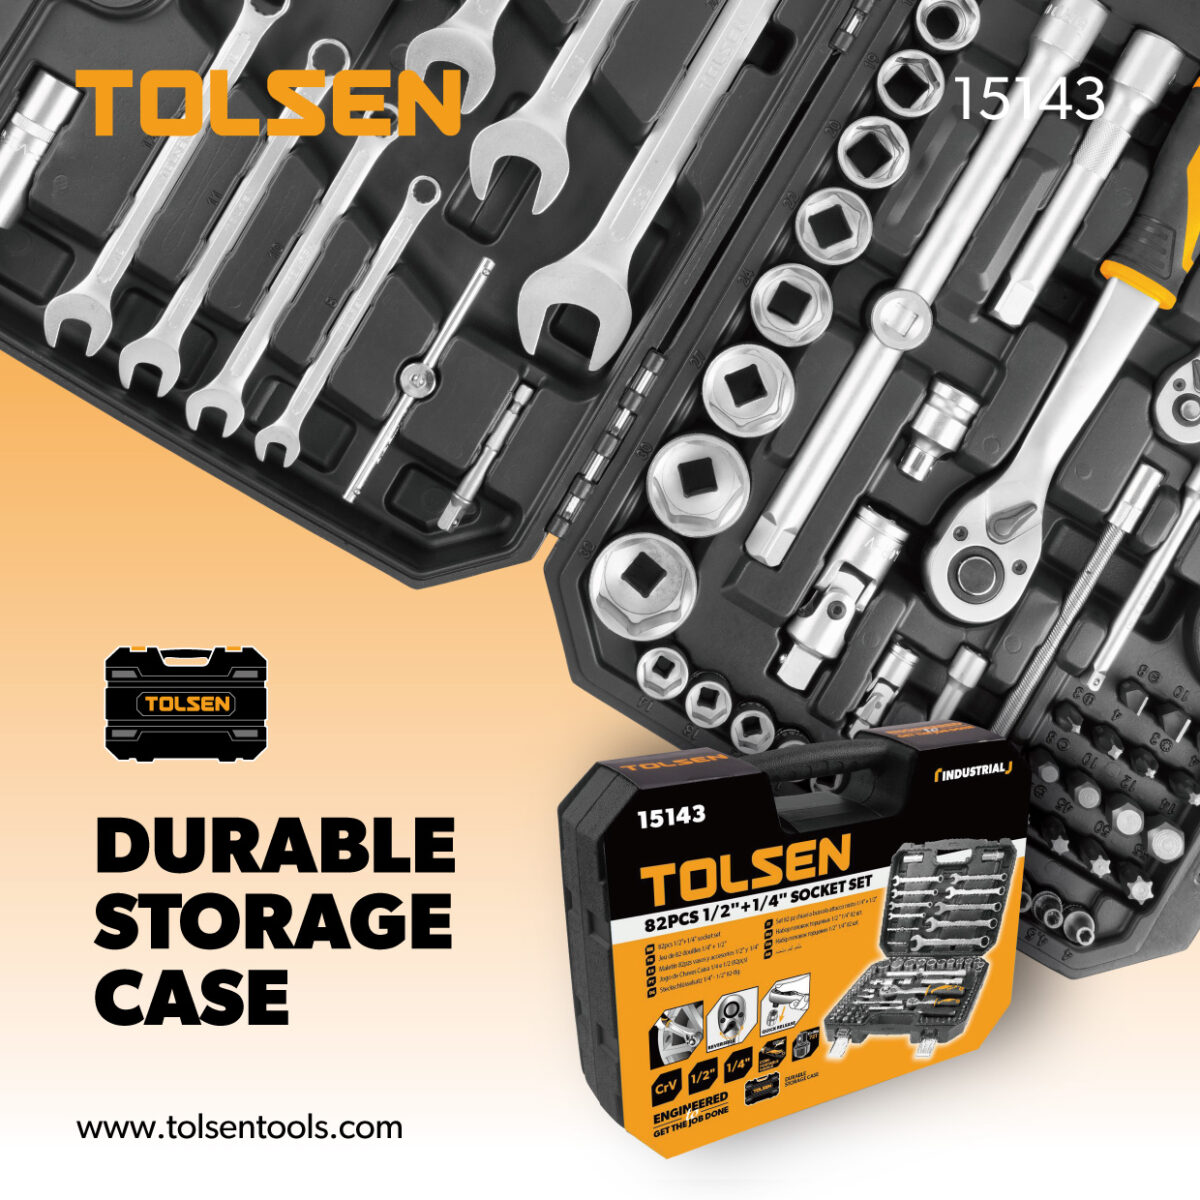 The Package of TOLSEN 82Pcs Socket Set